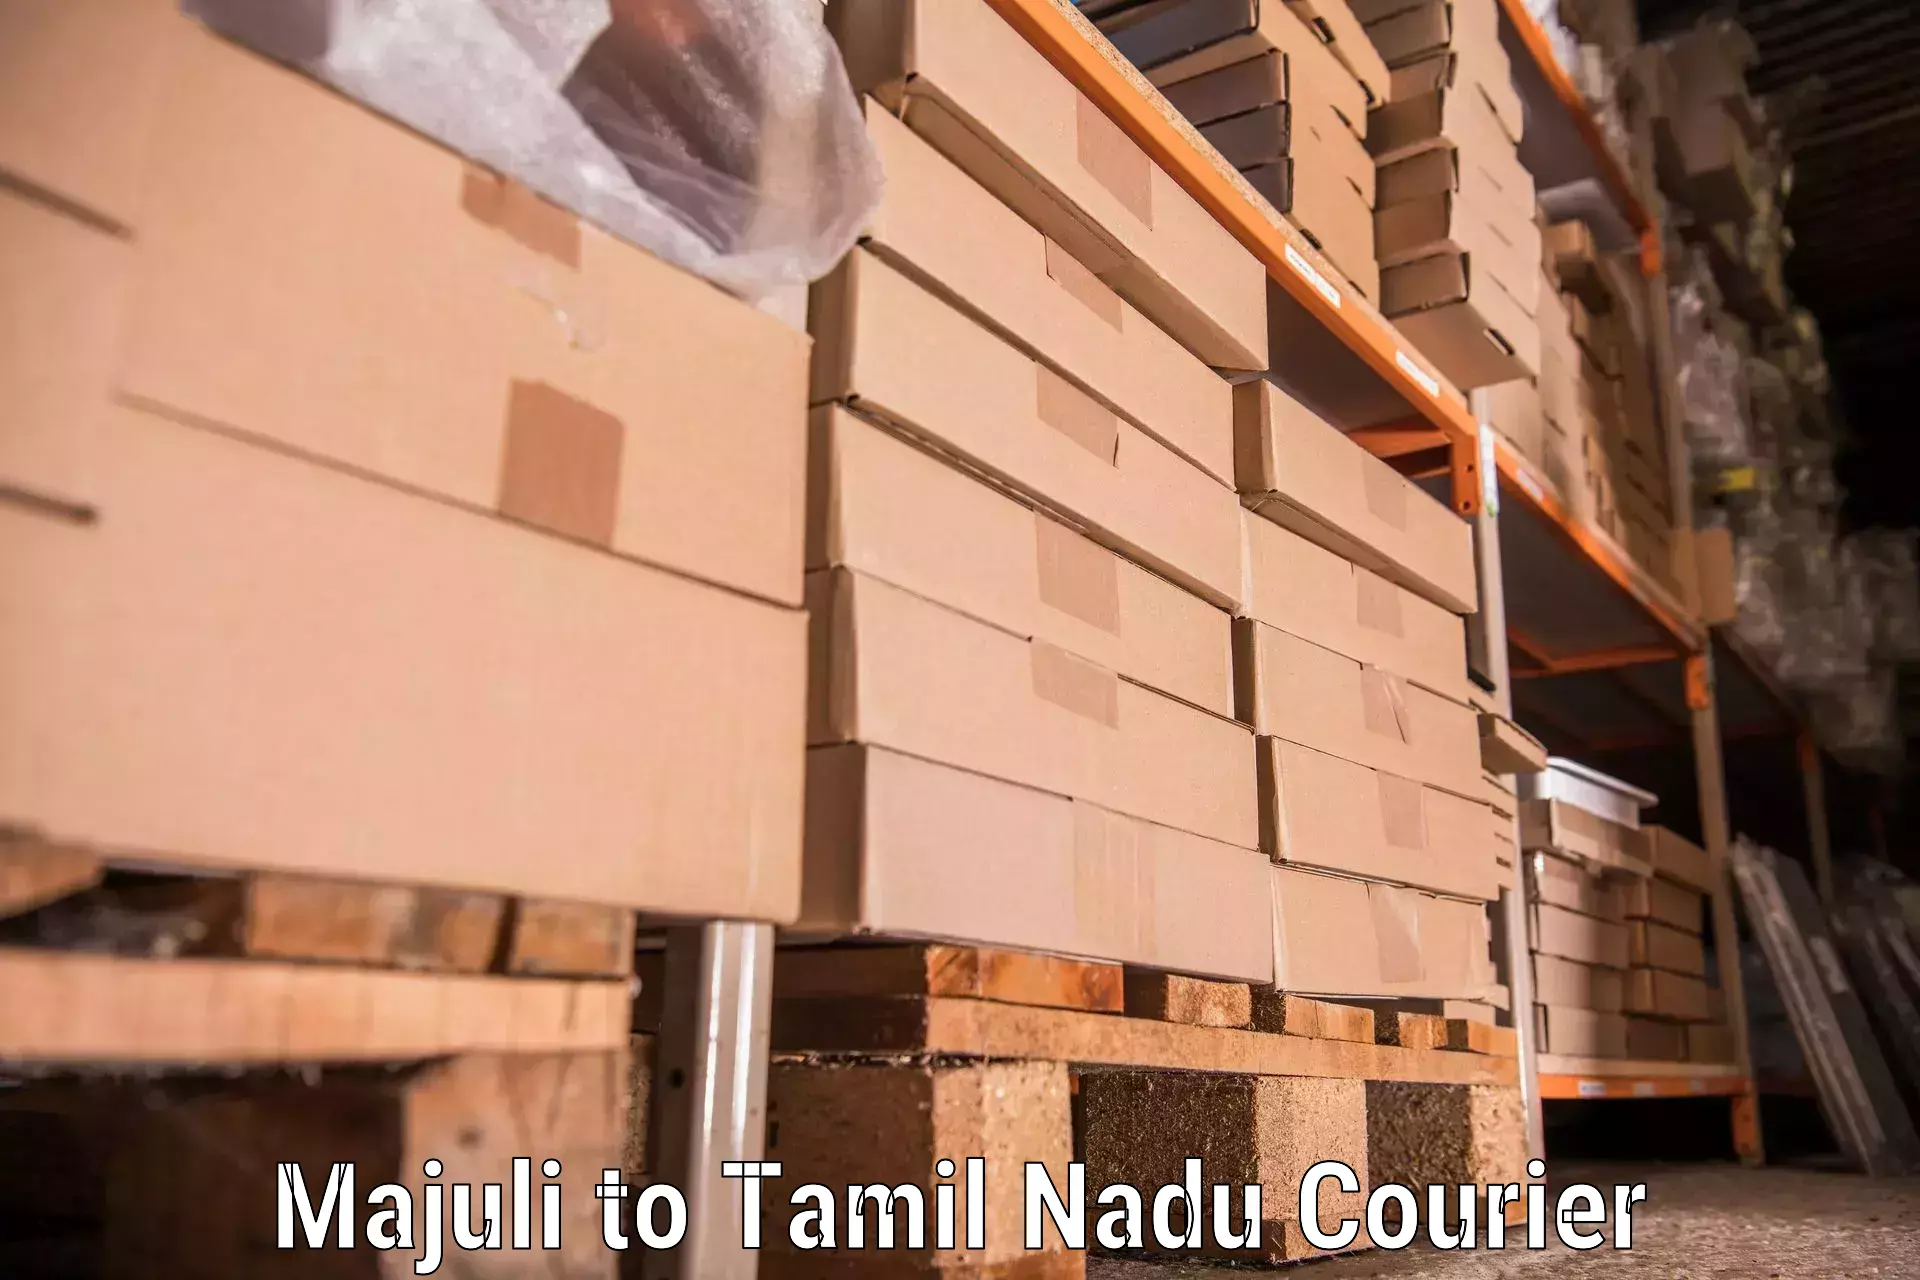 Professional moving company Majuli to Viralimalai